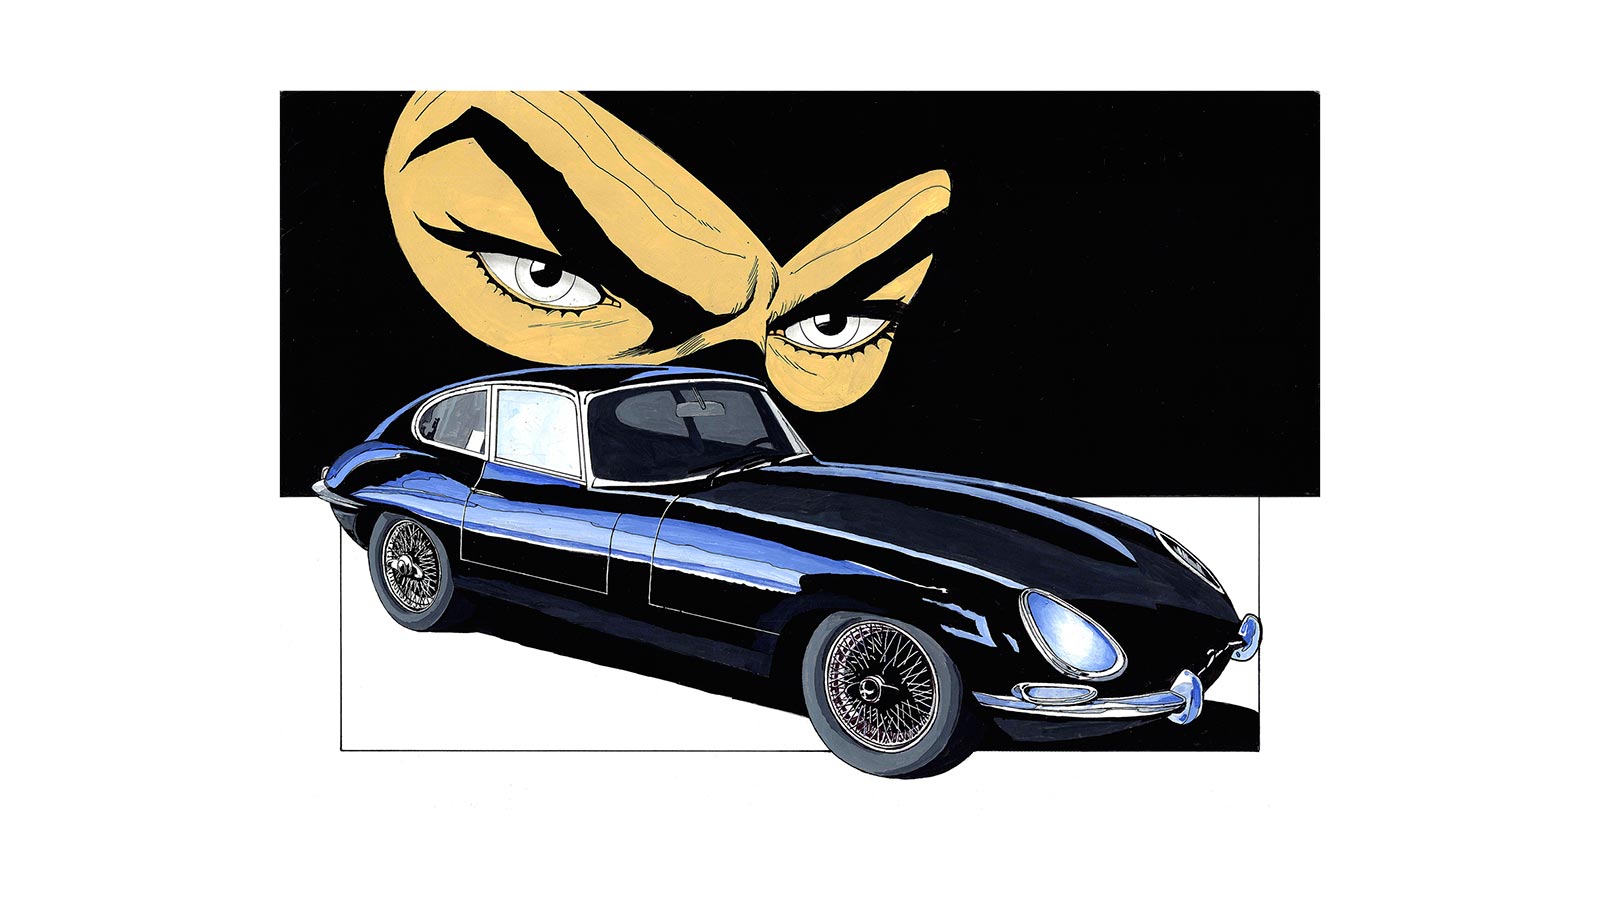 Diabolik, il criminale più affascinante di sempre, torna sul grande schermo in un film dei Manetti Bros. Con lui non poteva mancare quella che ormai è diventata a tutti gli effetti un'altra leggenda, la Jaguar E-Type.